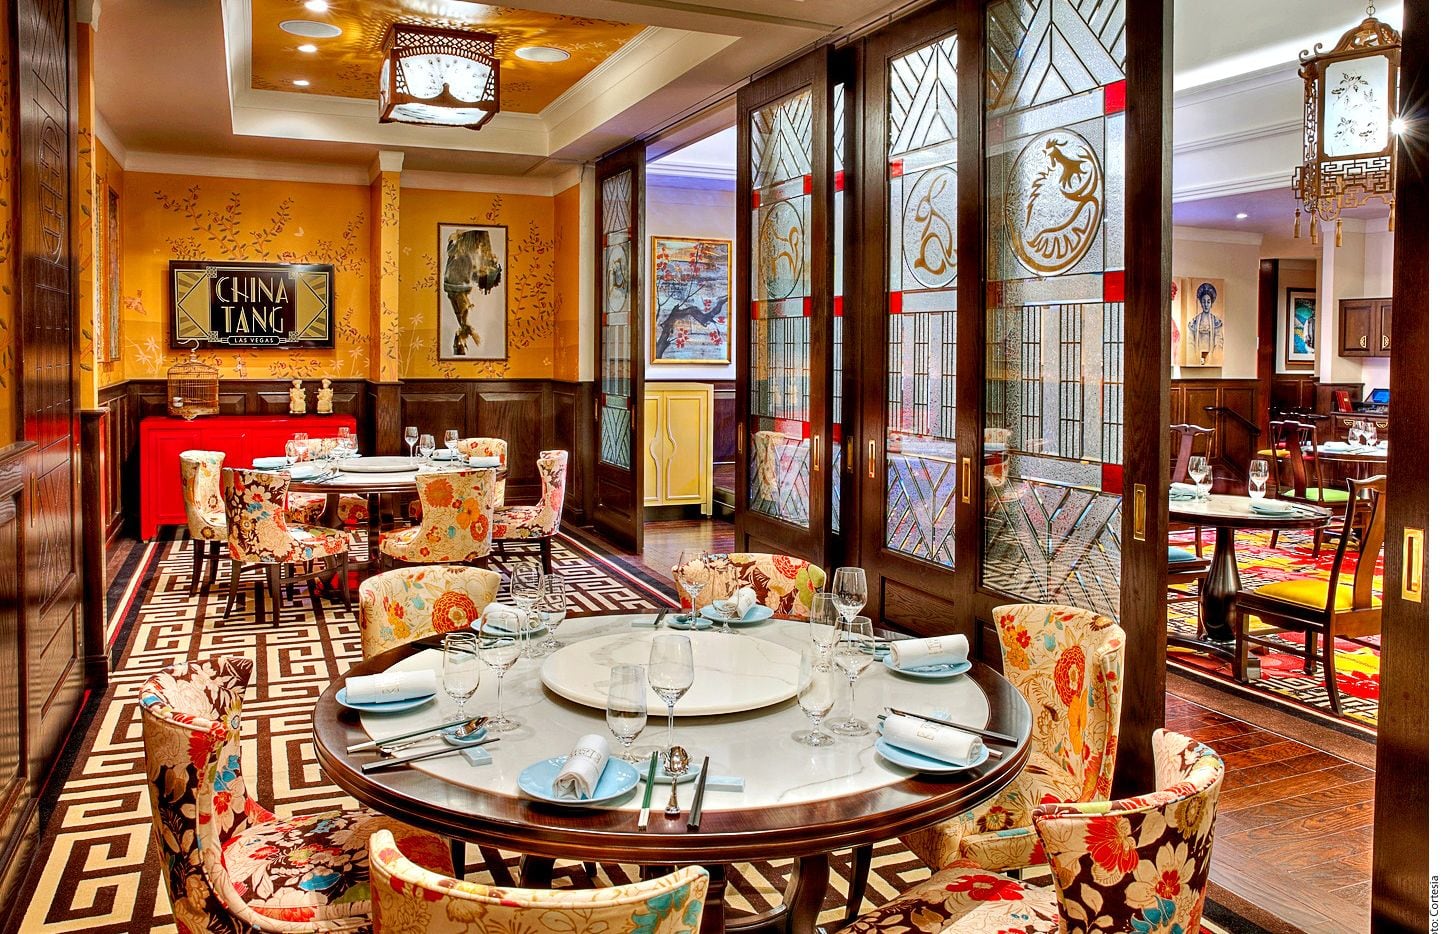 MGM Grand Las Vegas Hotel & Casino tiene un nuevo restaurante: China Tang, que busca revivir...